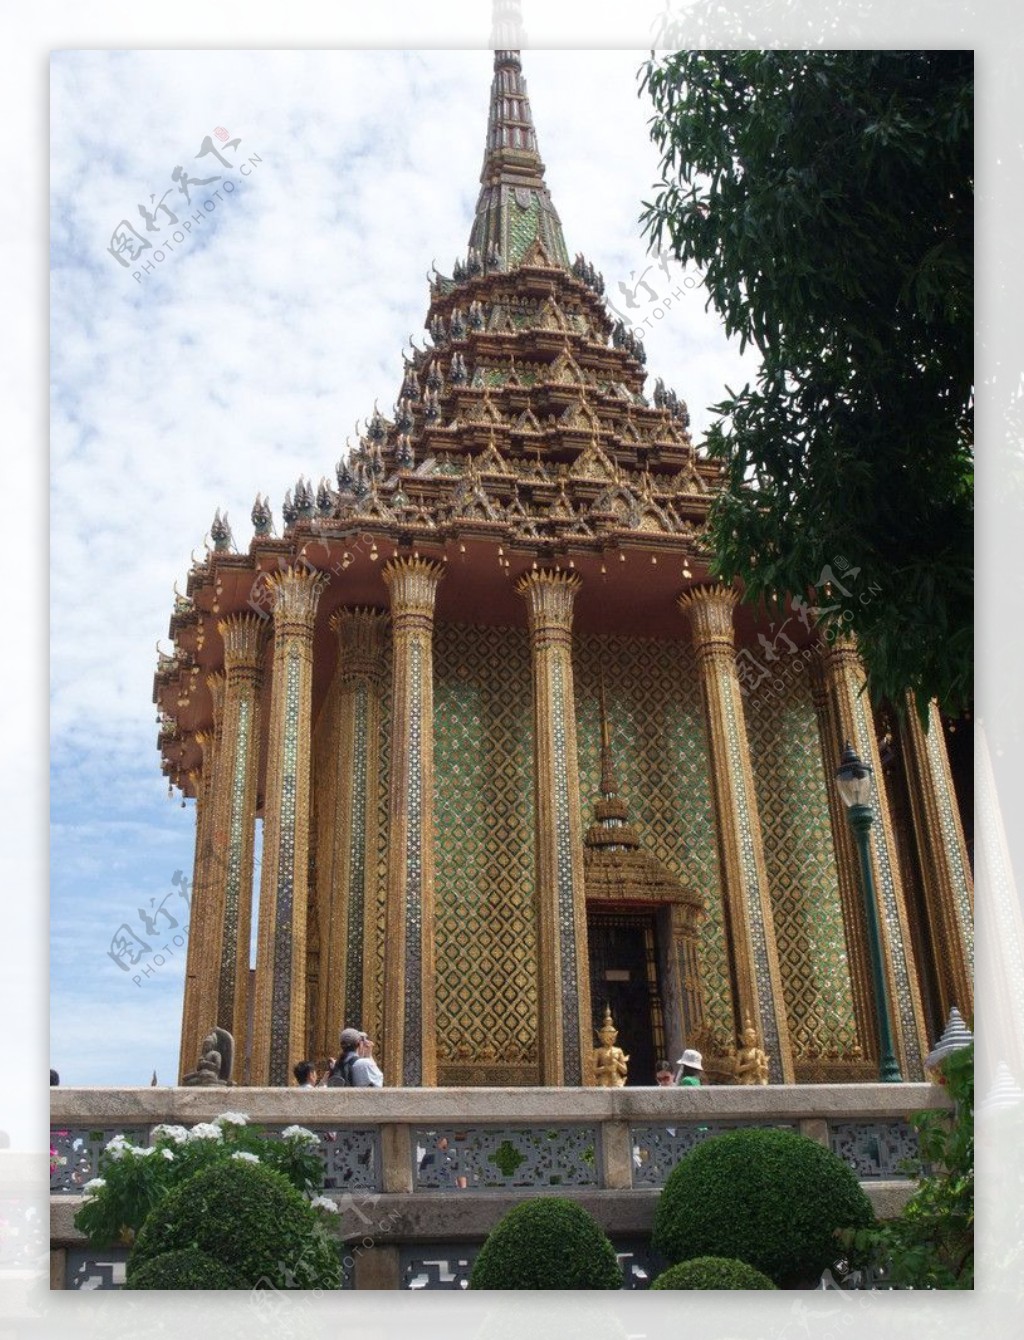 异国风情泰国建筑庙宇兀立树影婆娑自然和谐图片